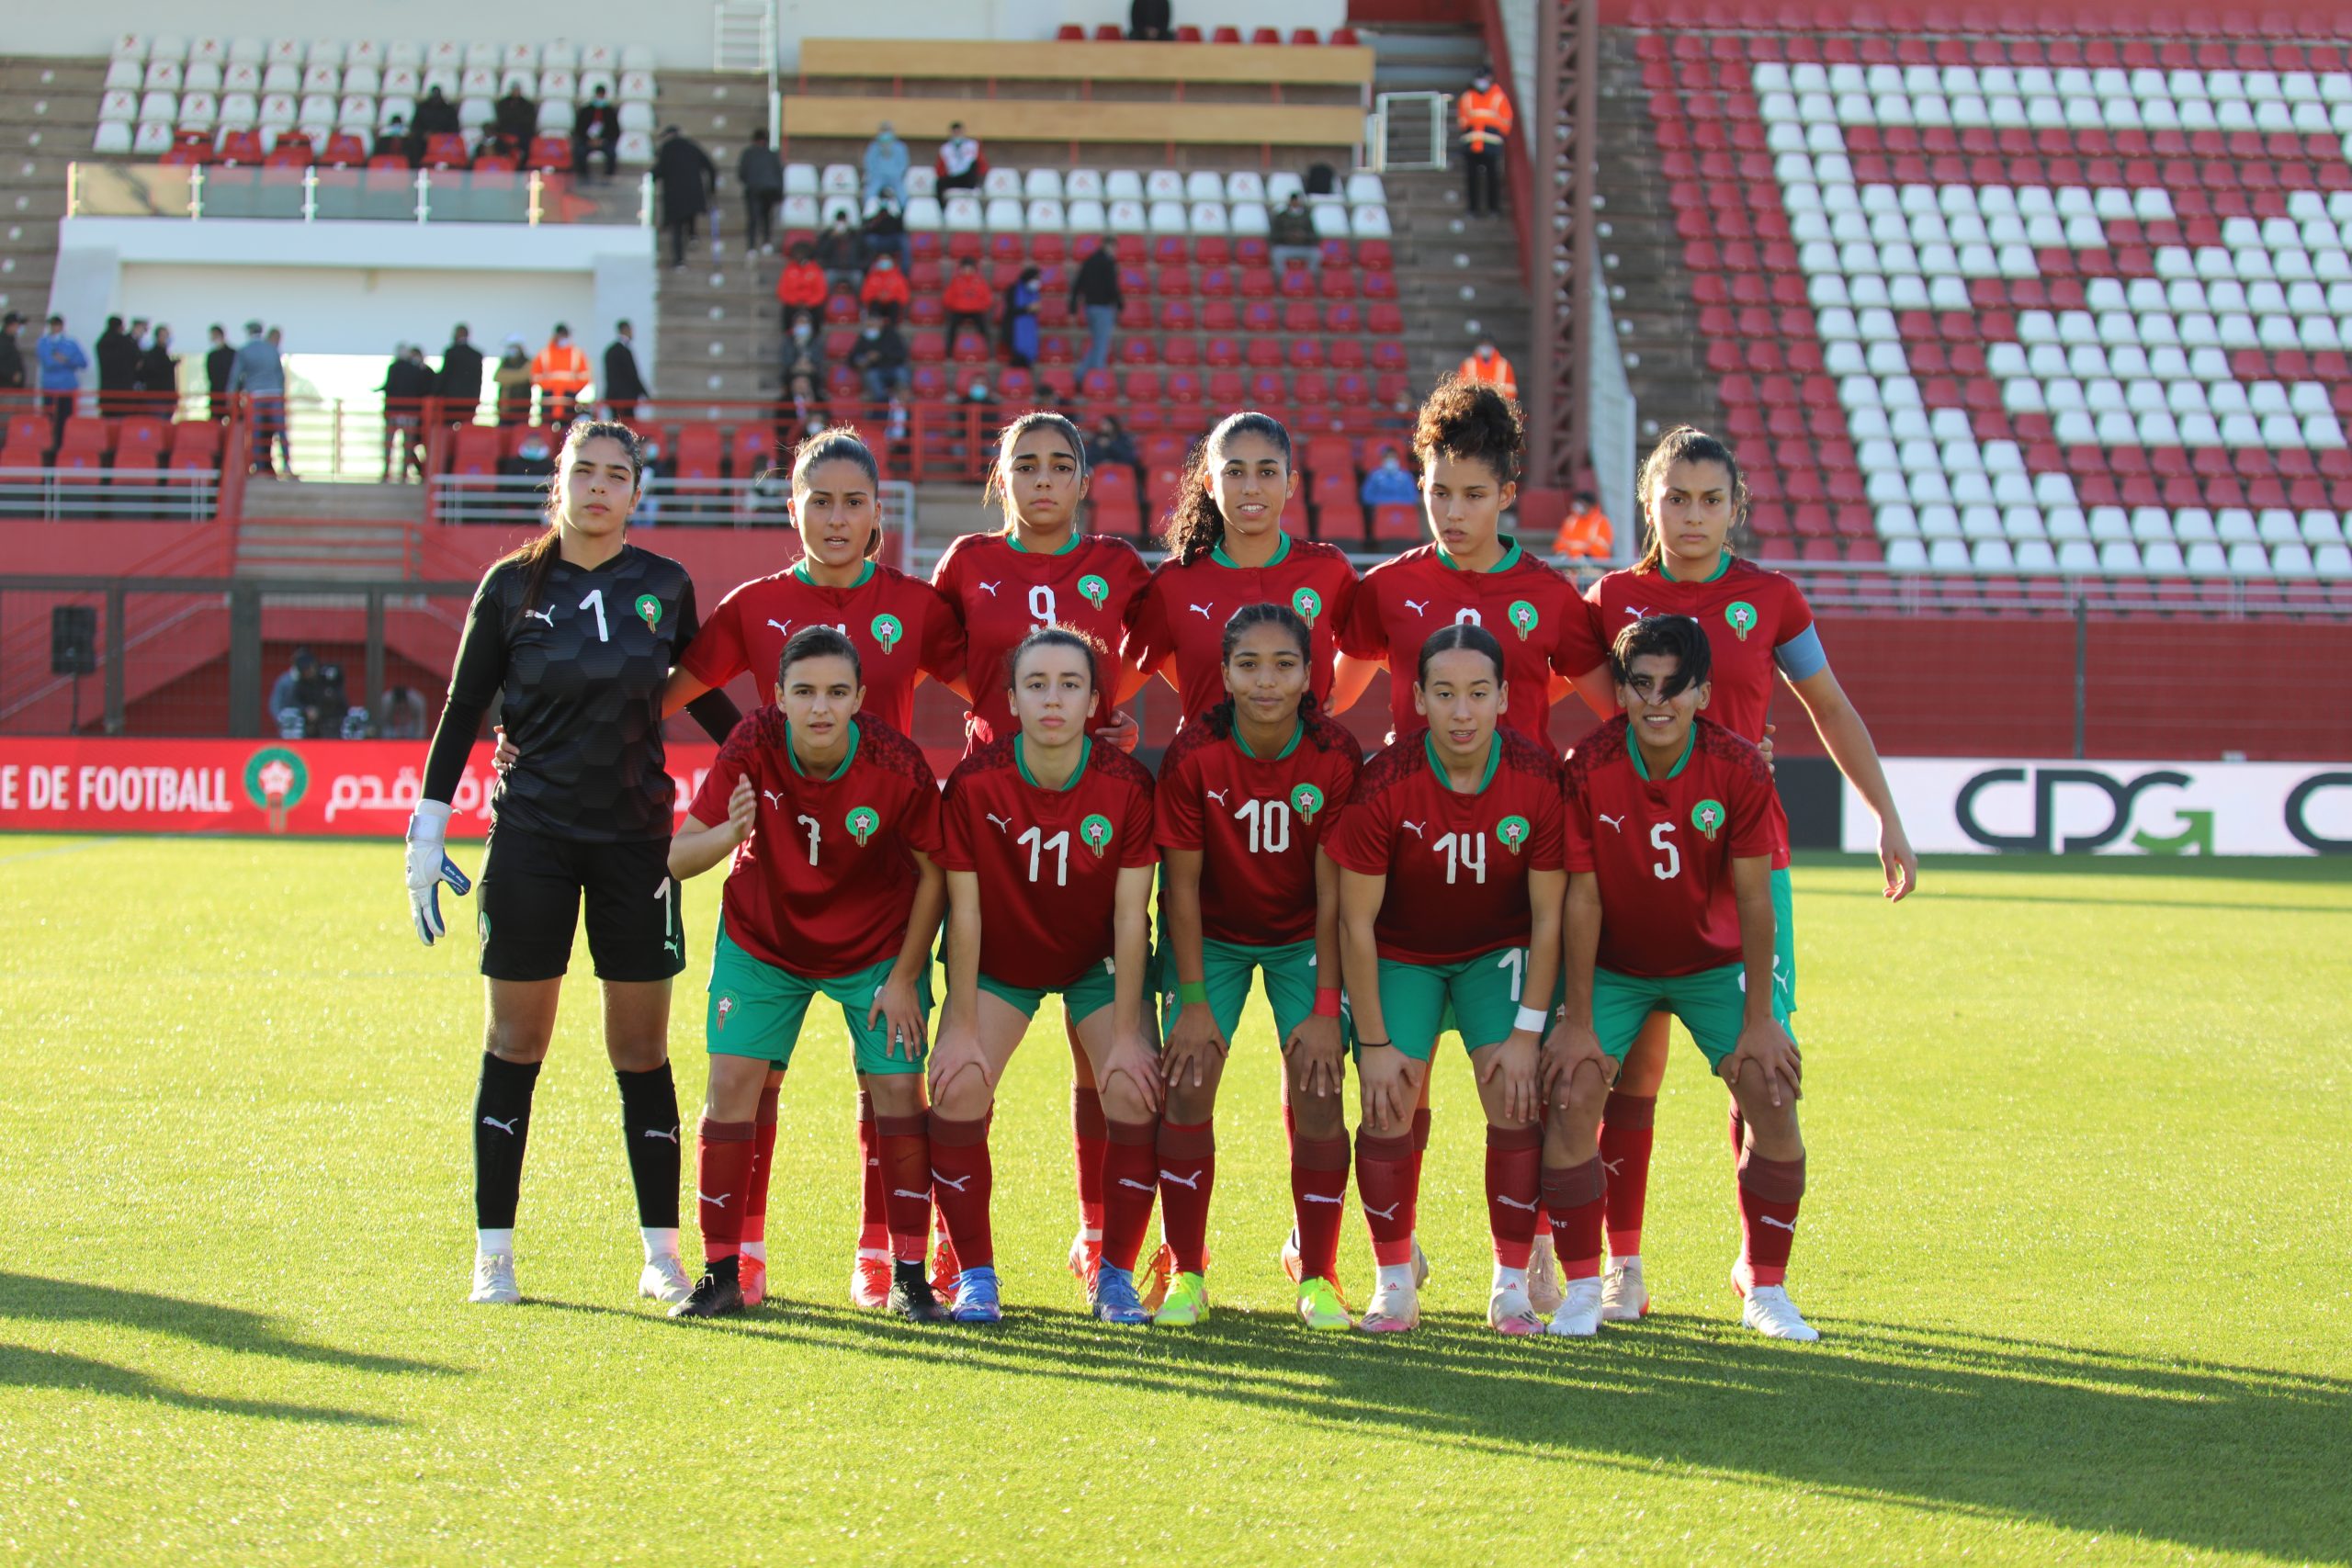 المنتخب الوطني النسوي لأقل من 20 سنة يواجه السنغال في تصفيات كأس العالم